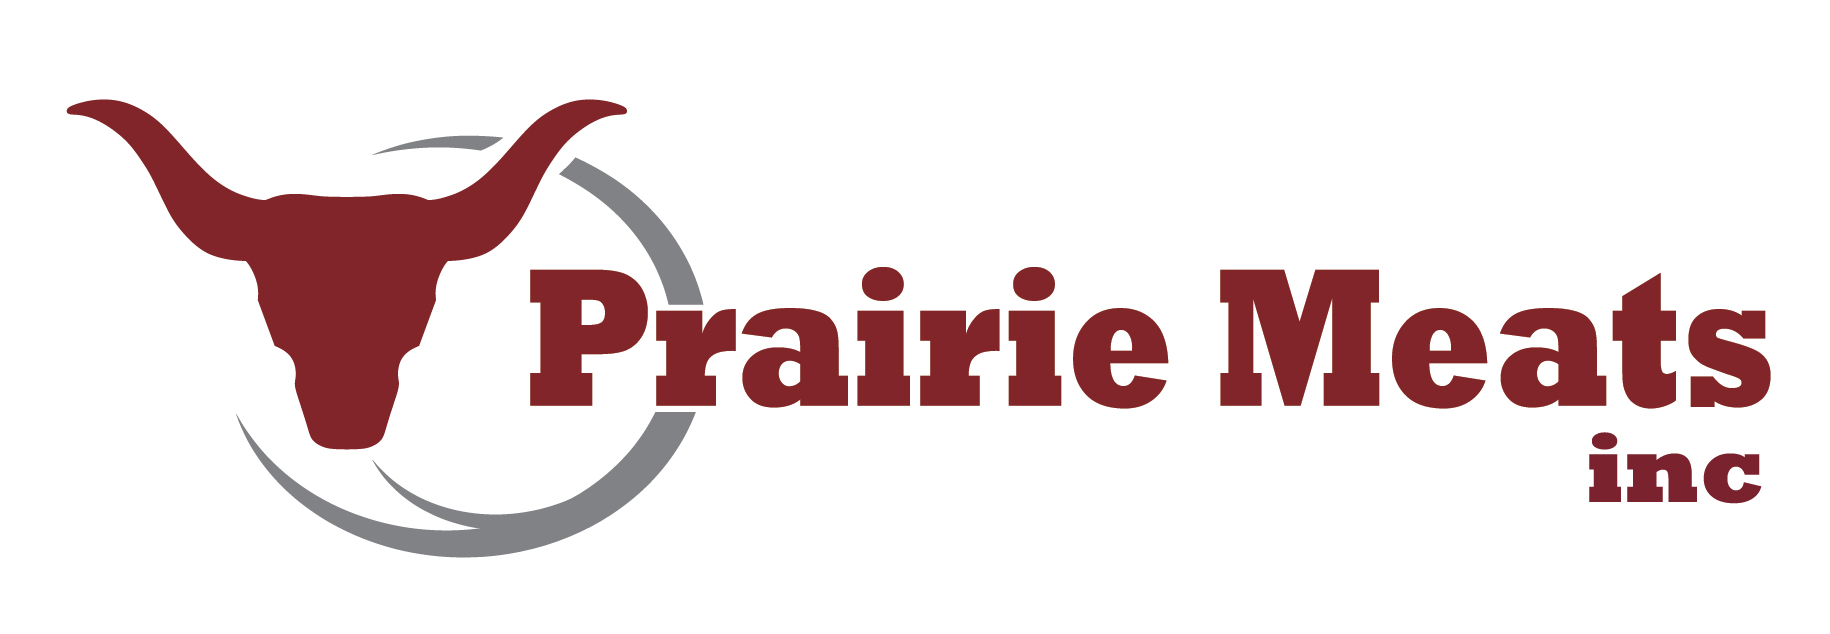 Prairie Meats Inc.